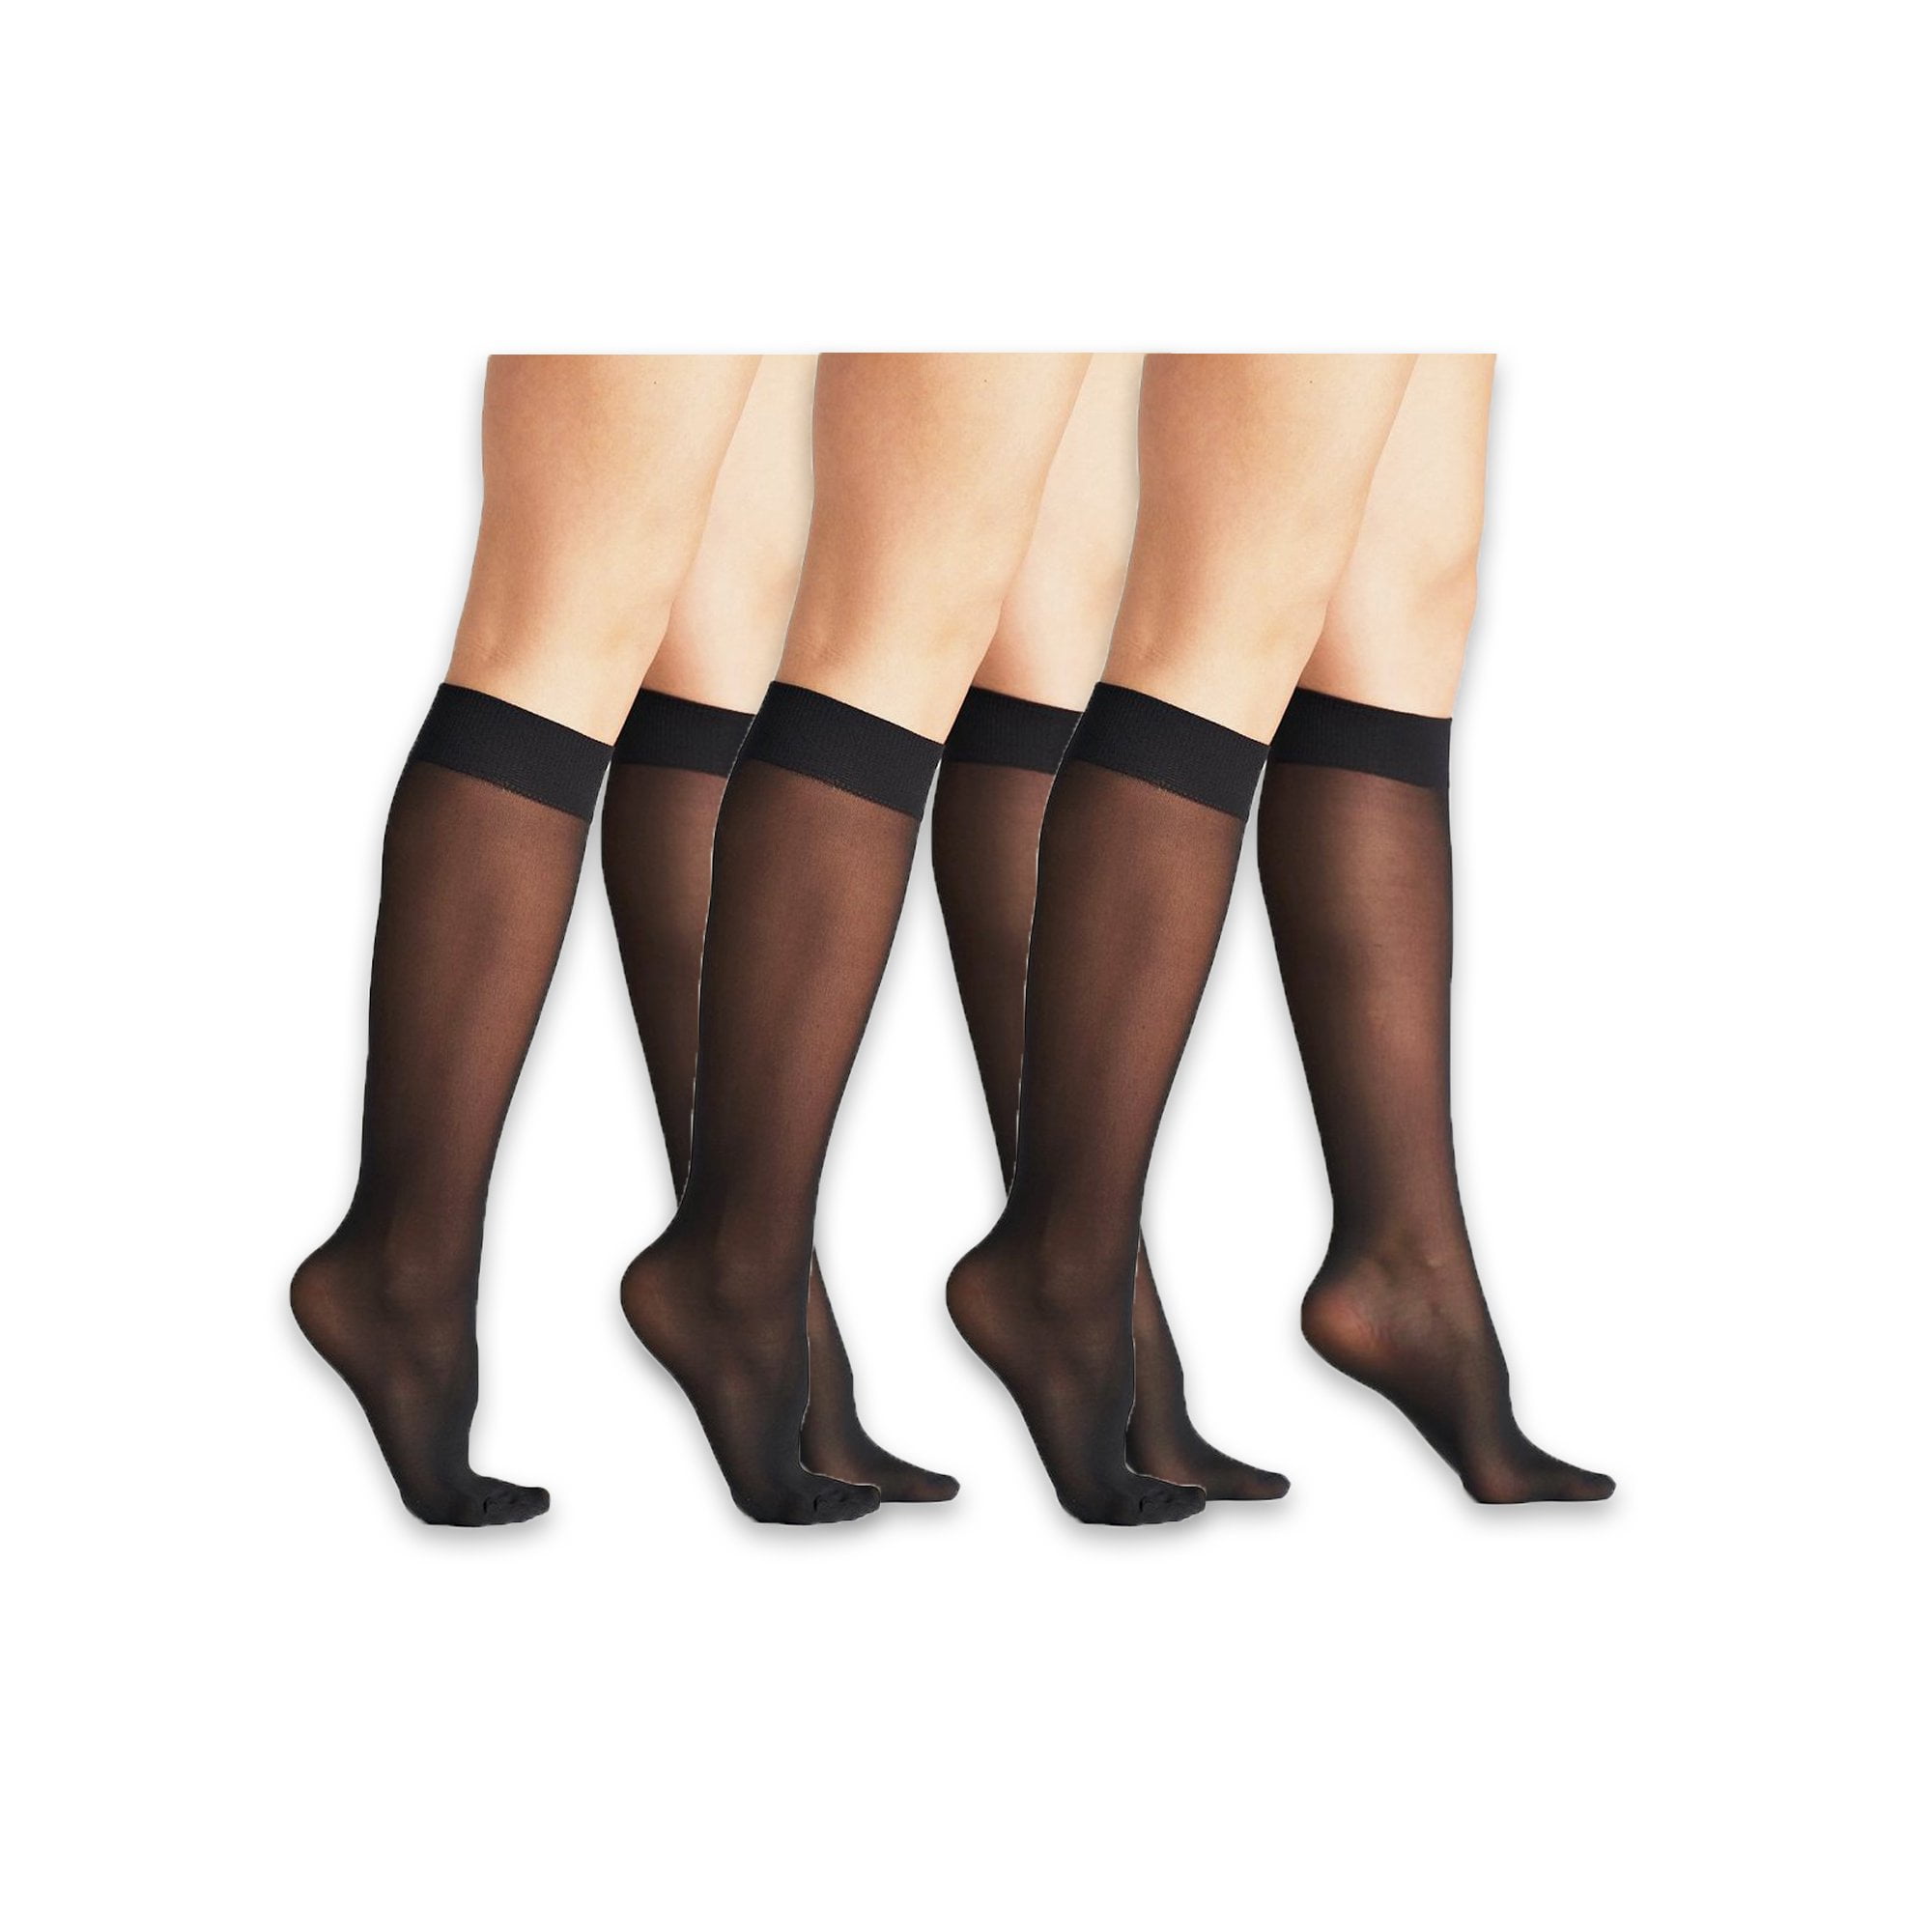 Nude Trouser Socks  Women Socks  On The Go Hosiery